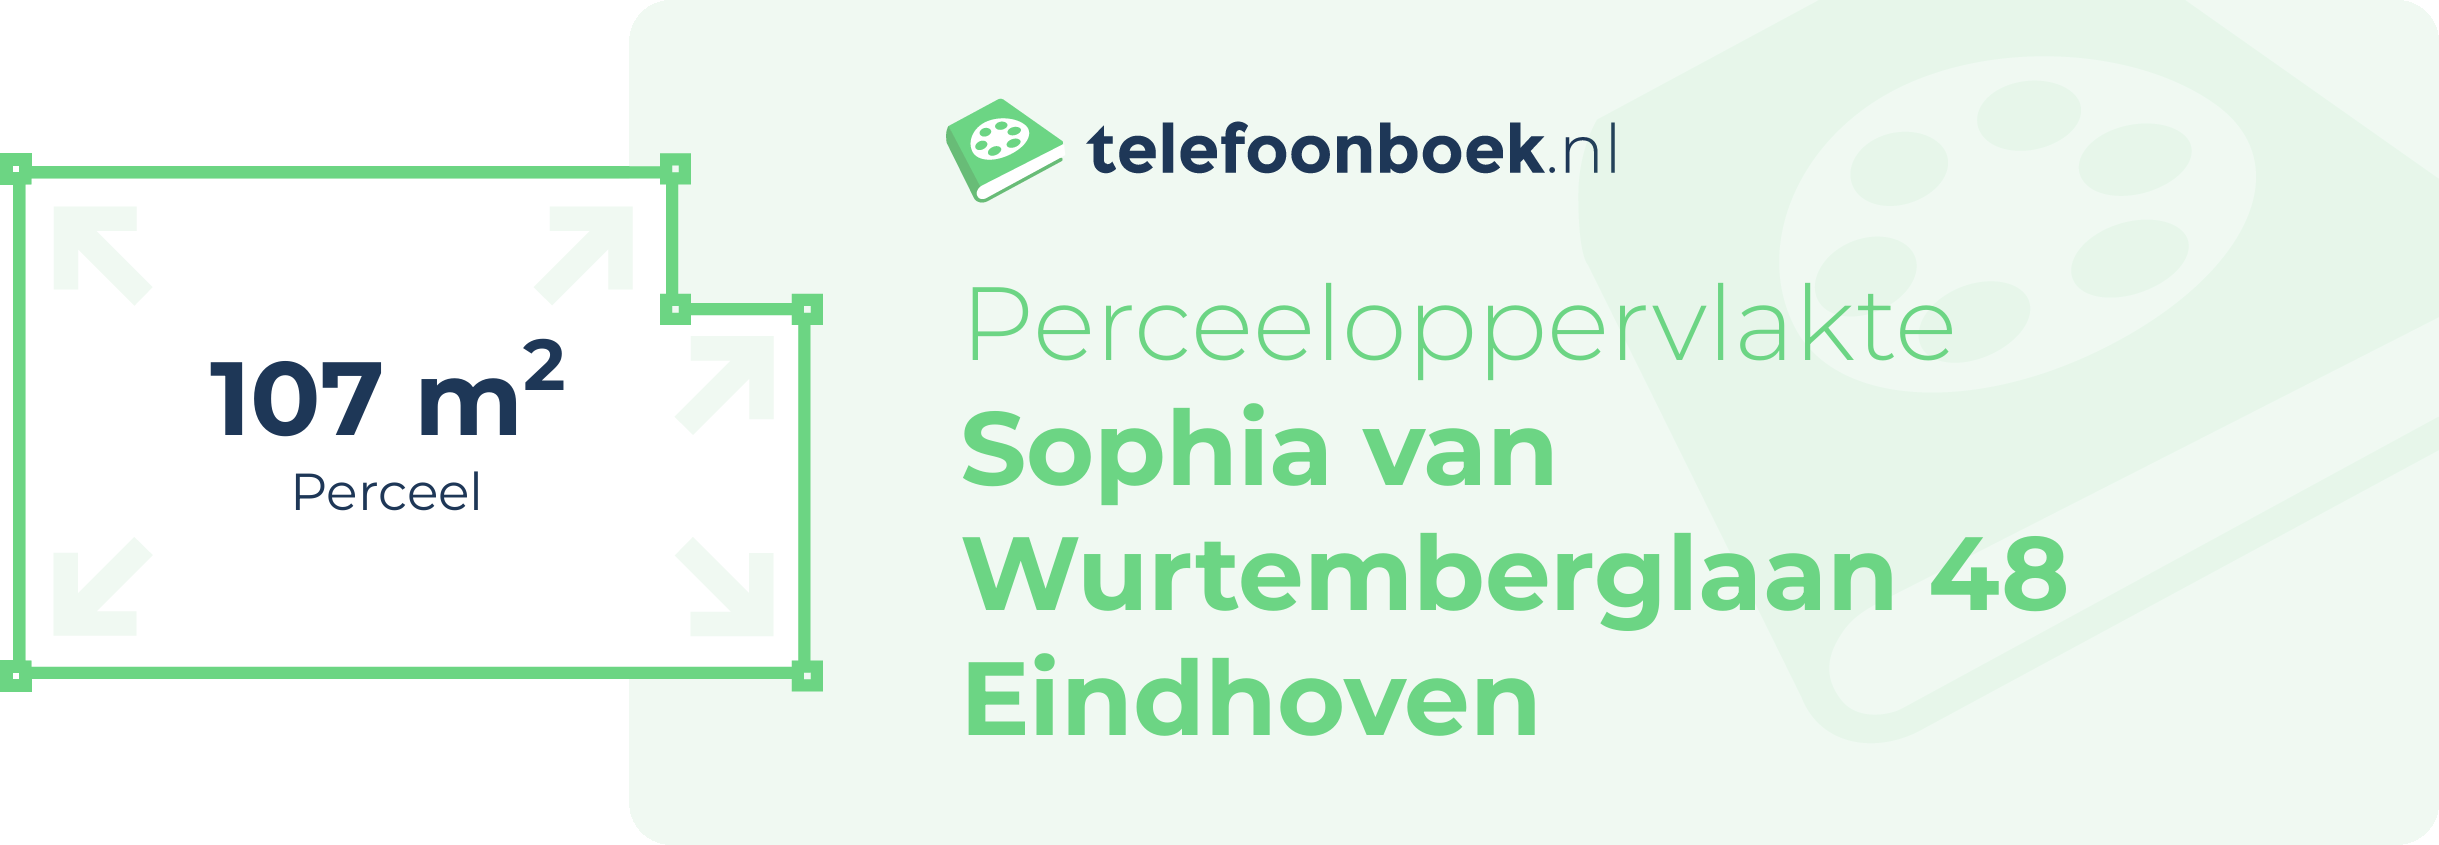 Perceeloppervlakte Sophia Van Wurtemberglaan 48 Eindhoven